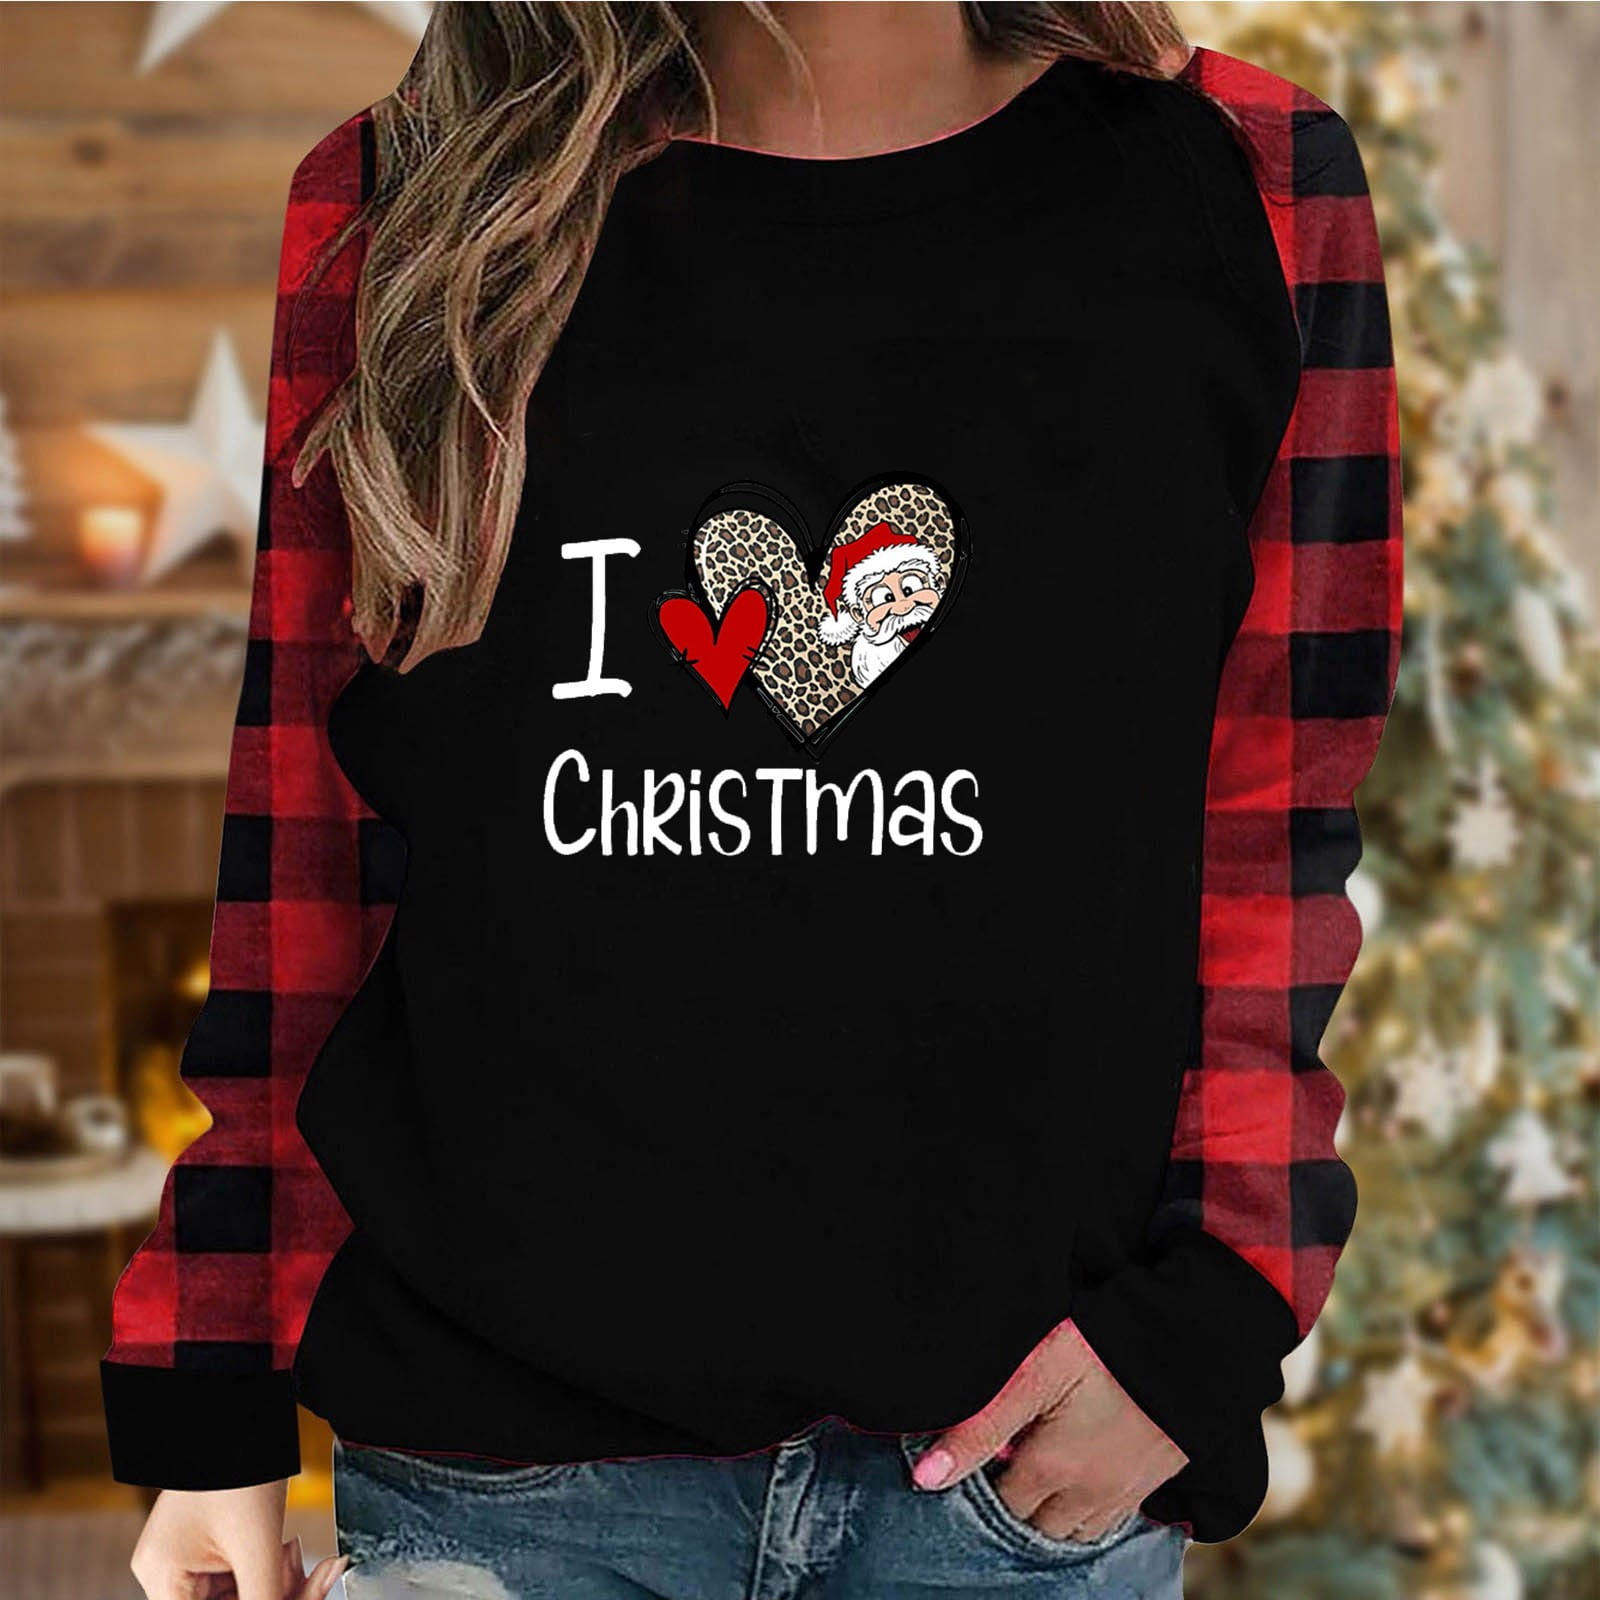 LIBRCLO Merry Christmas Shirts for Women Christmas Tree Sweatshirts ...